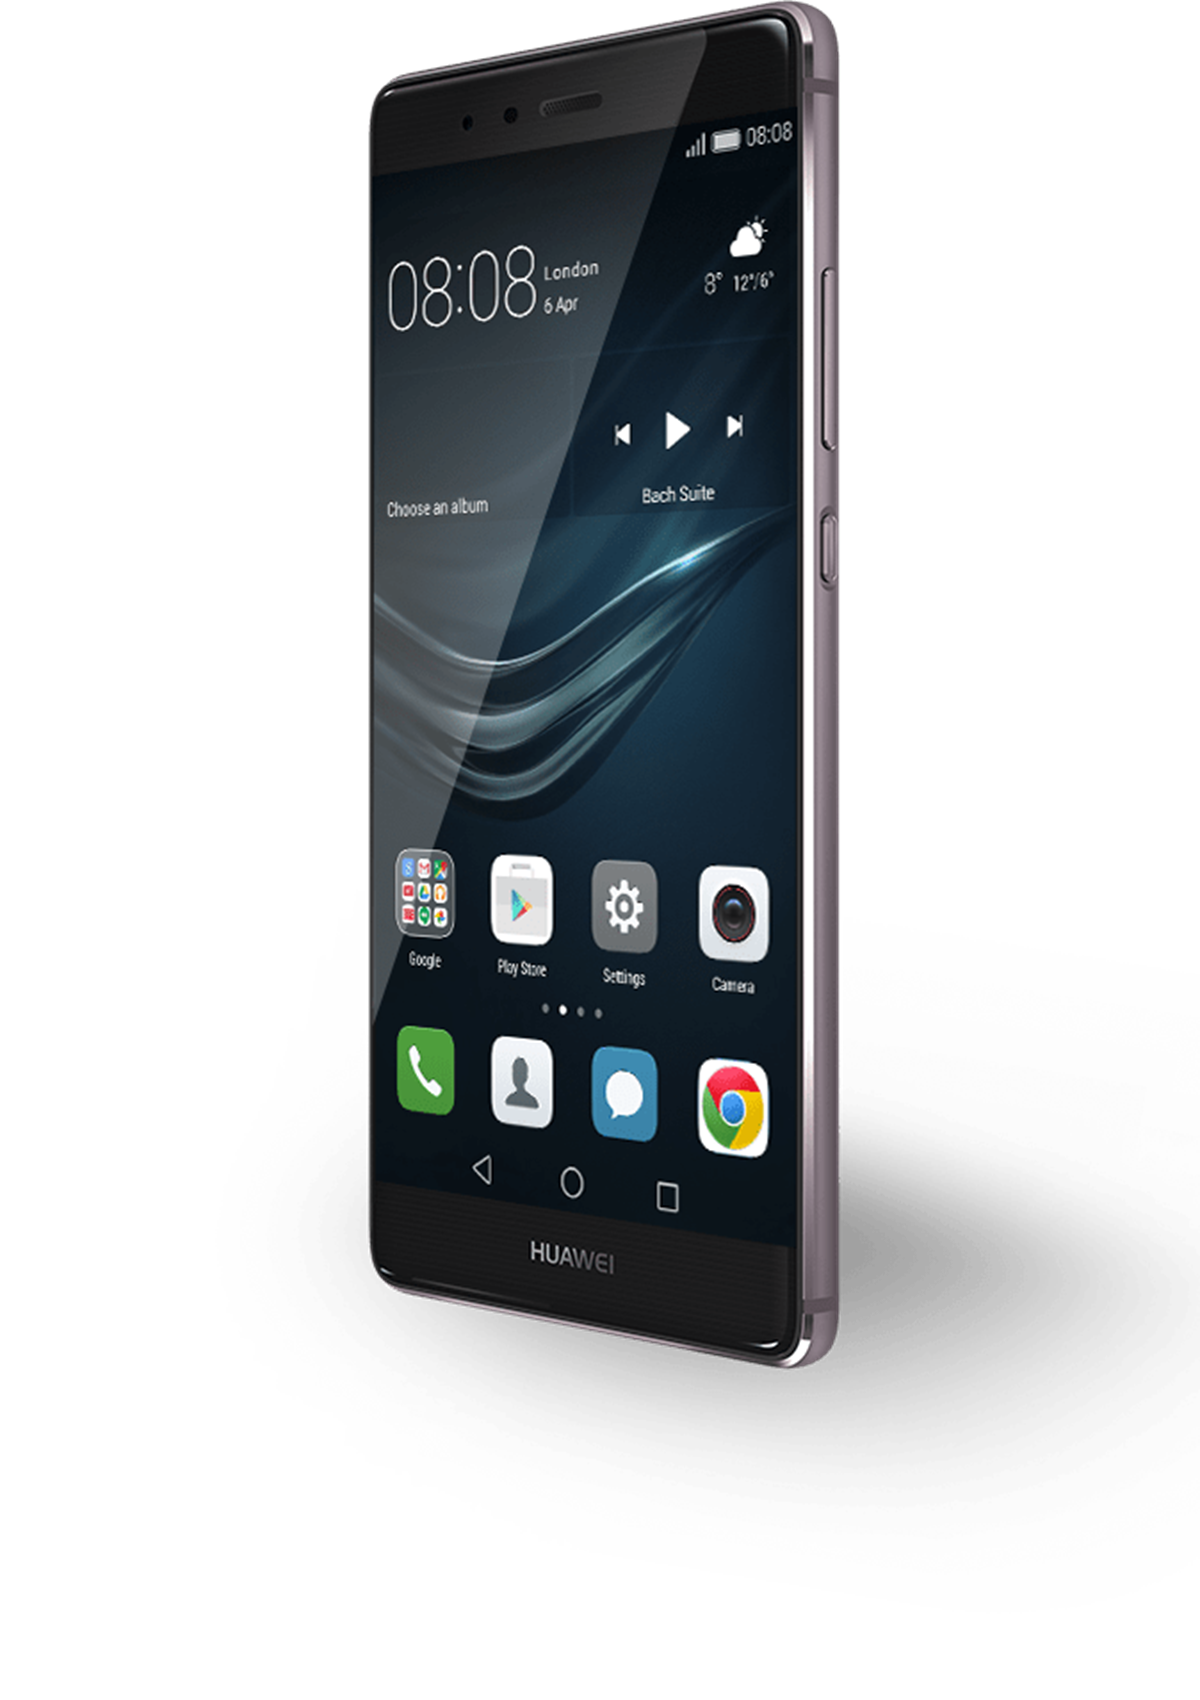 Til 1.300 kroner for en brugt Huawei P9 får du meget smartphone for pengene. Til prisen er det et godt køb